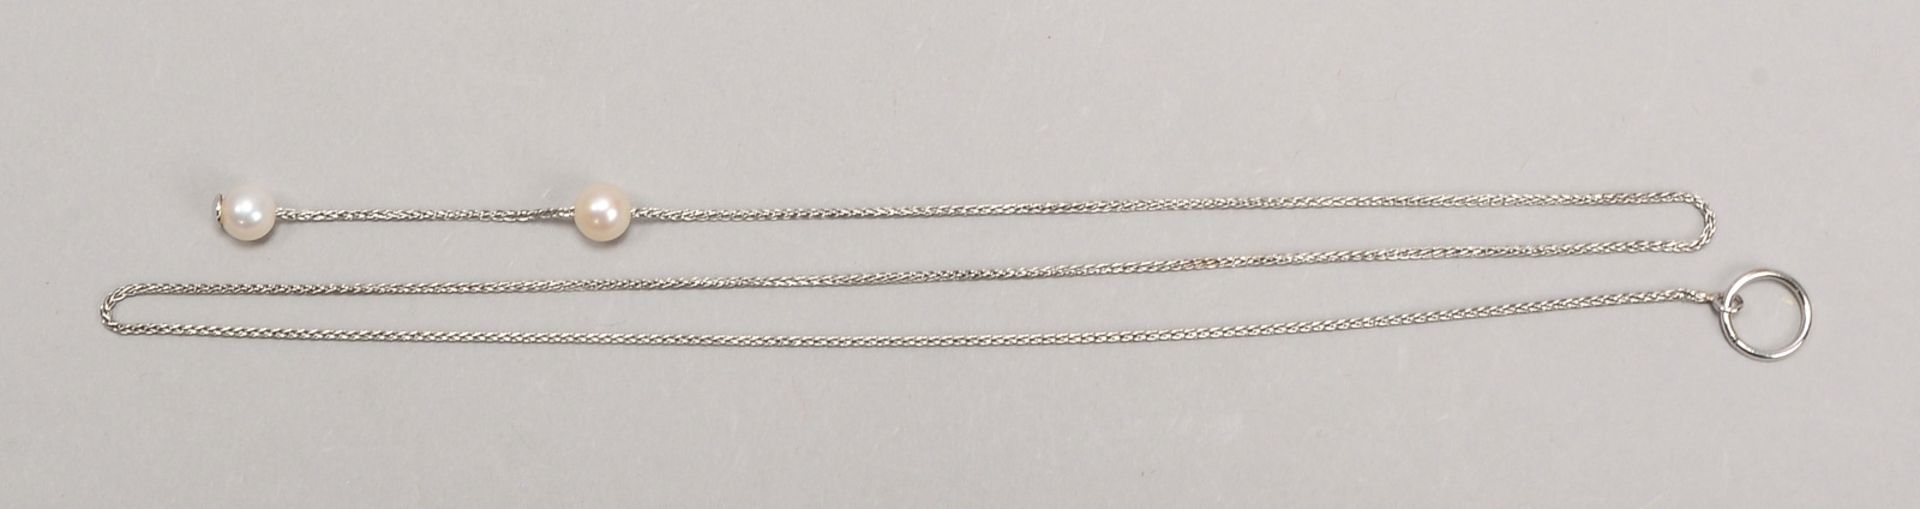 Halskette, 585 WG (gepr.), mit 2-fachem Perlenbesatz; Länge 49 cm, Gew. 3,20 g